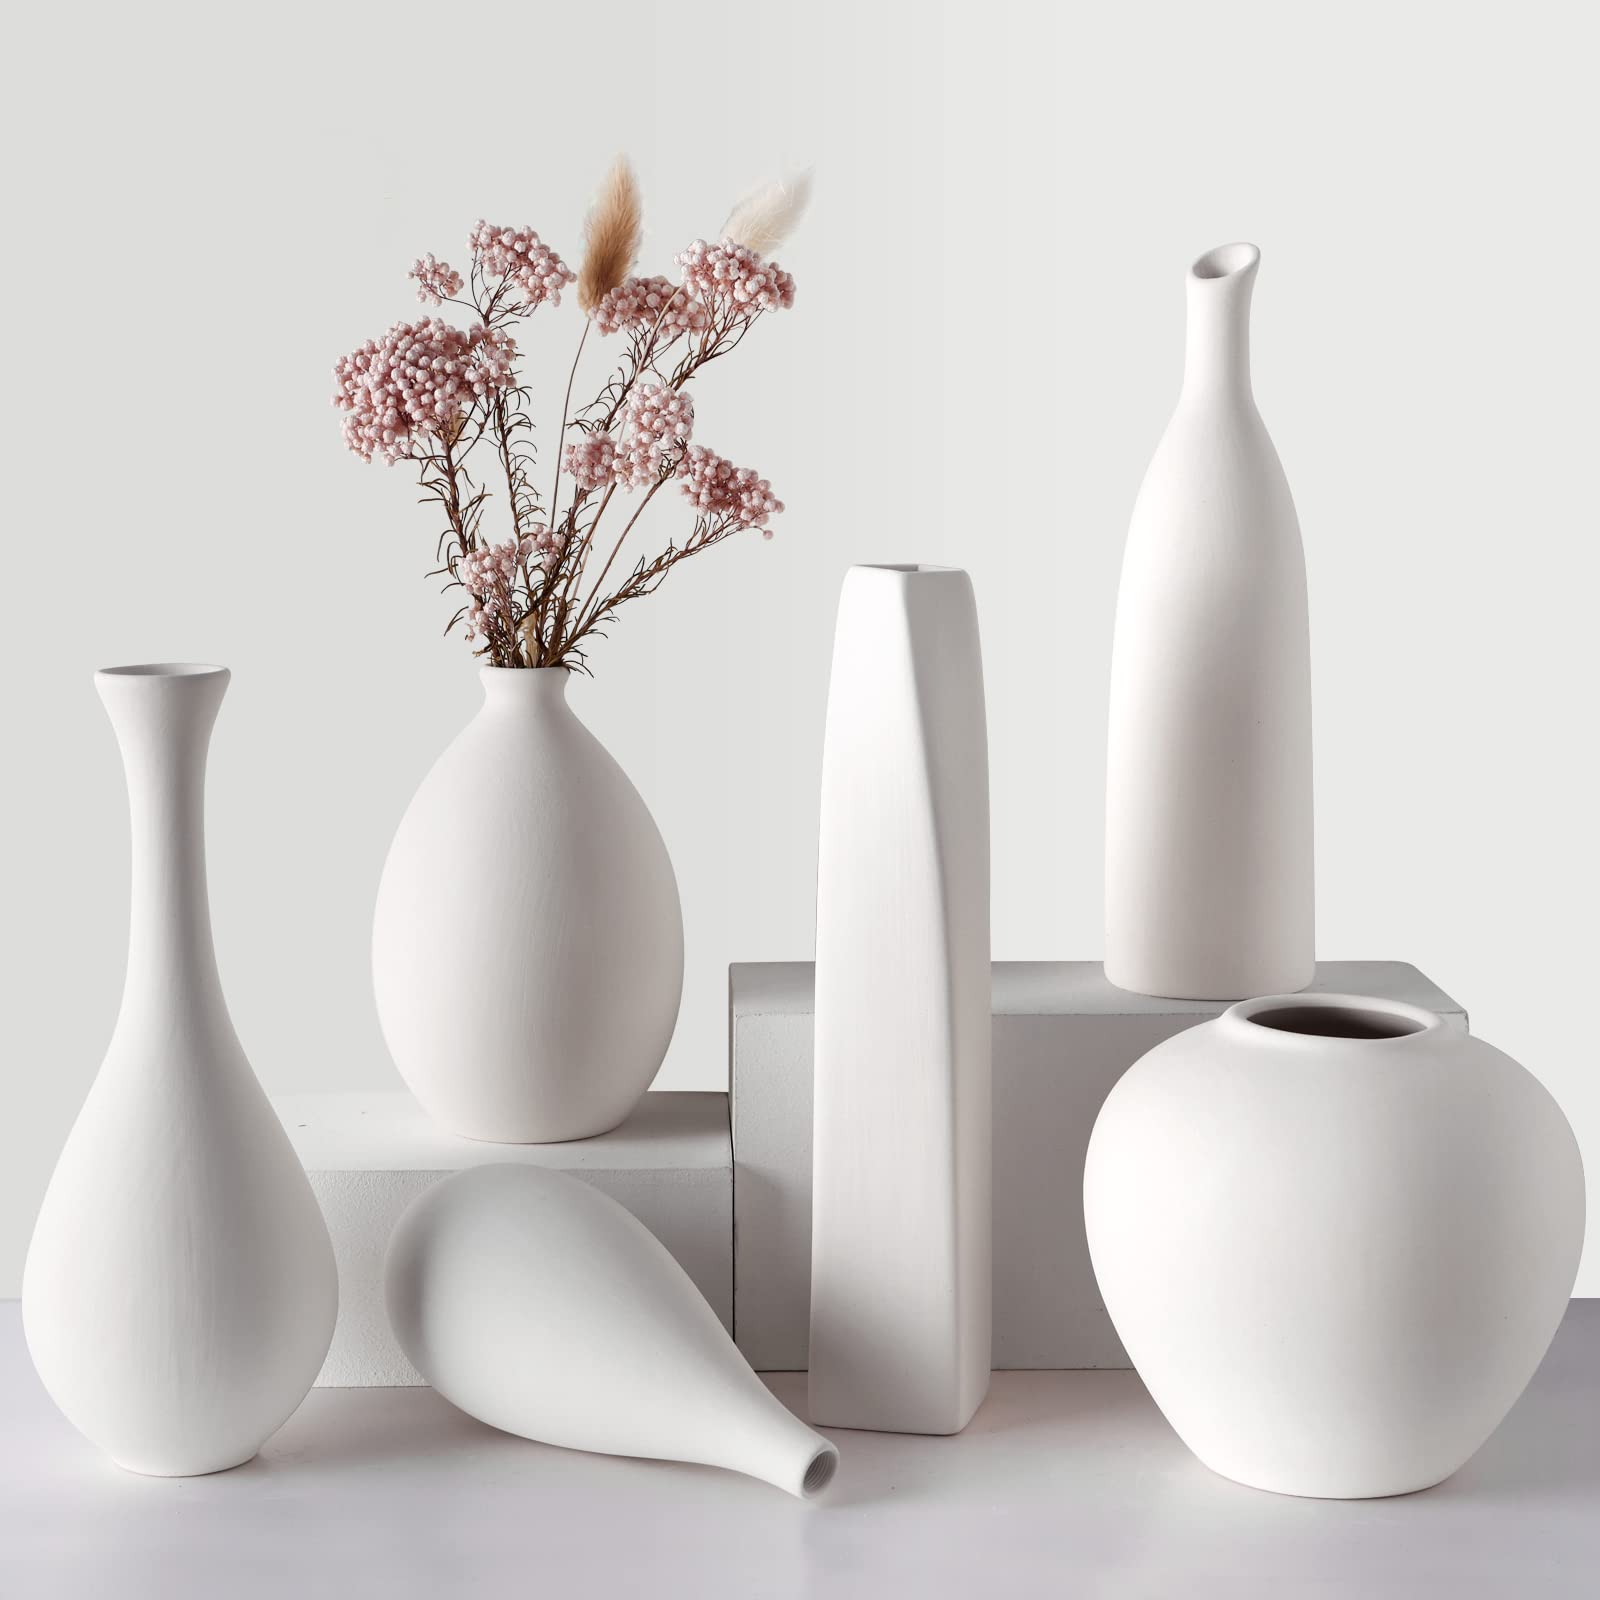 How To Clean Ceramic Vase